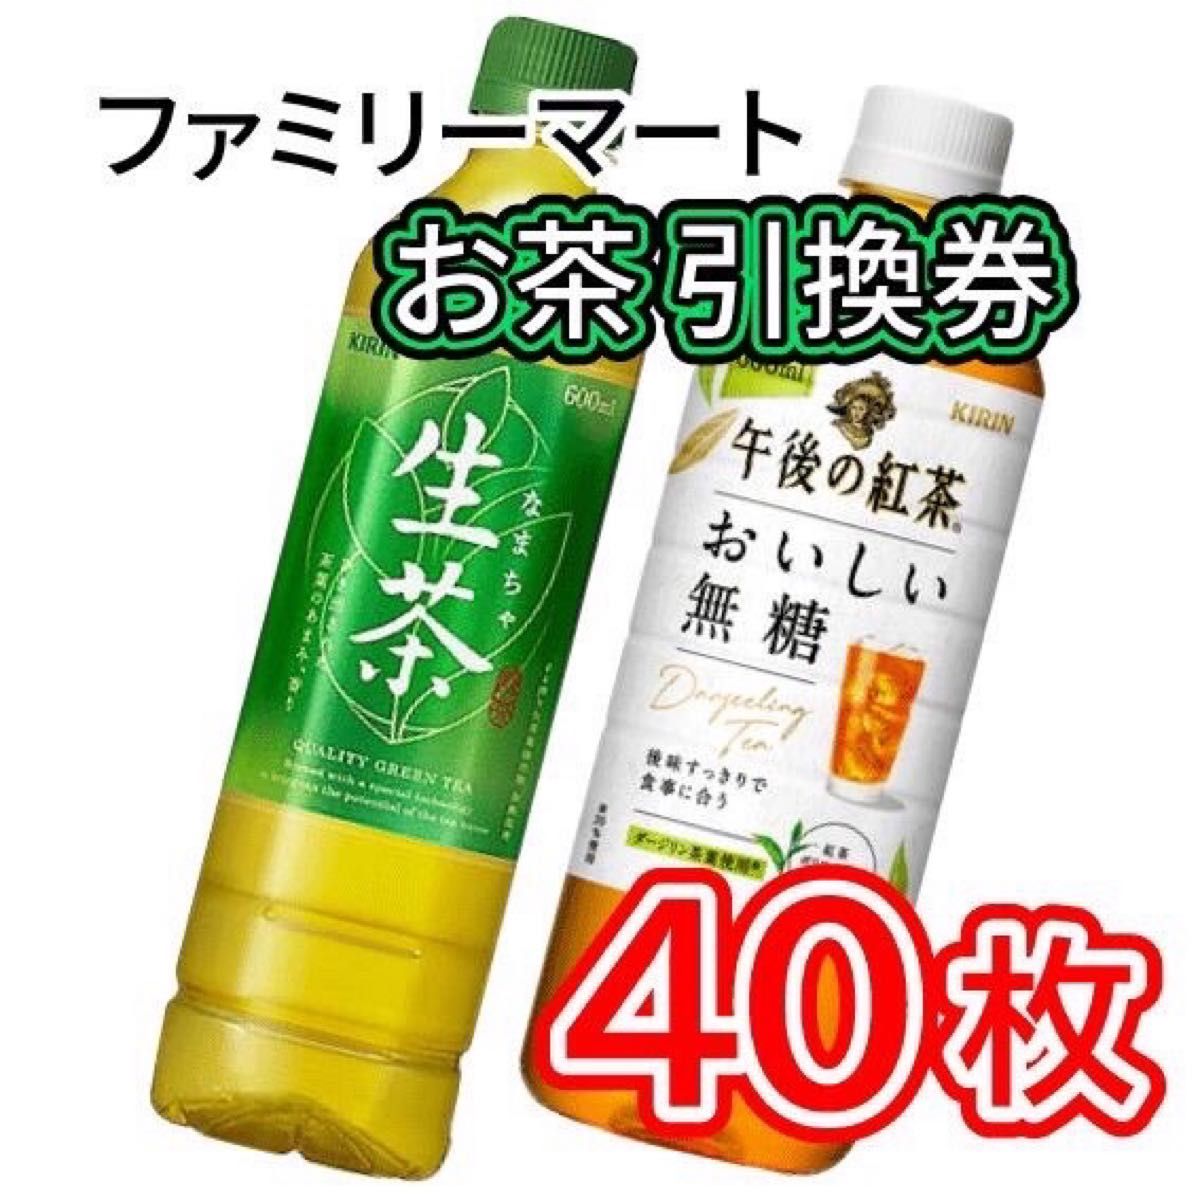 002   ファミリーマート 野菜ジュース 引換券 40枚